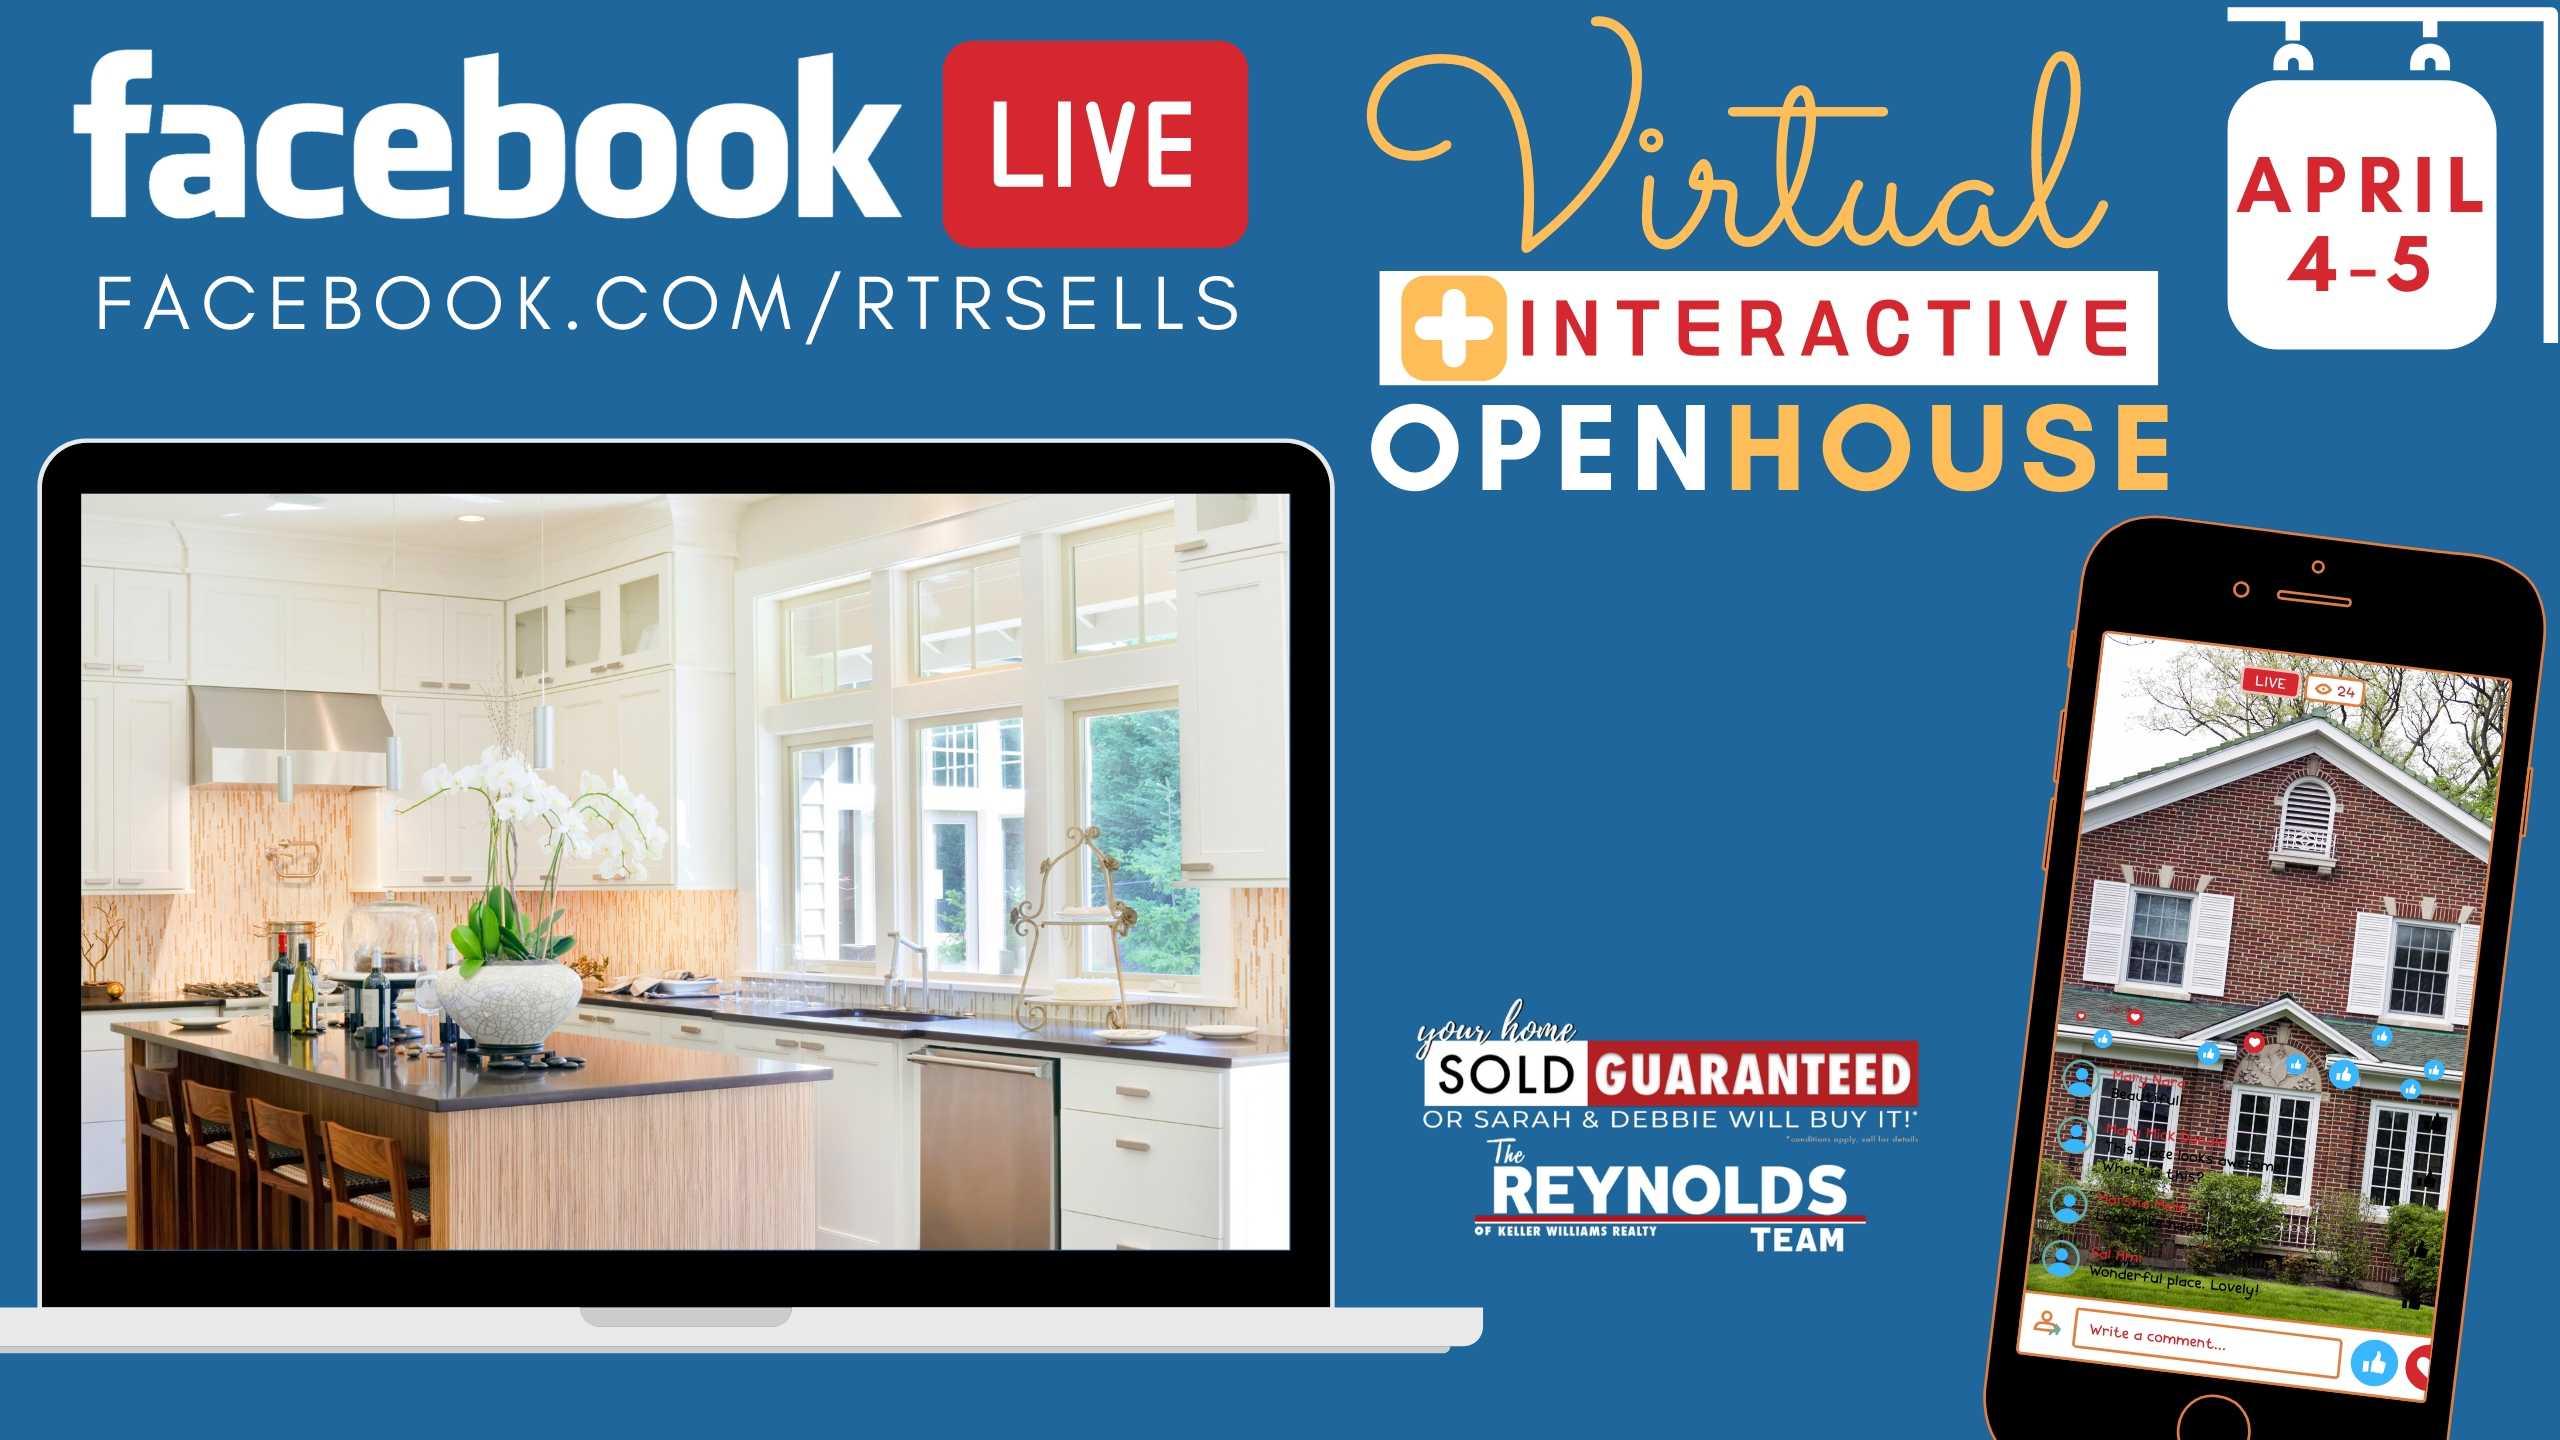 Facebook Live Virtual Open House April 4-5